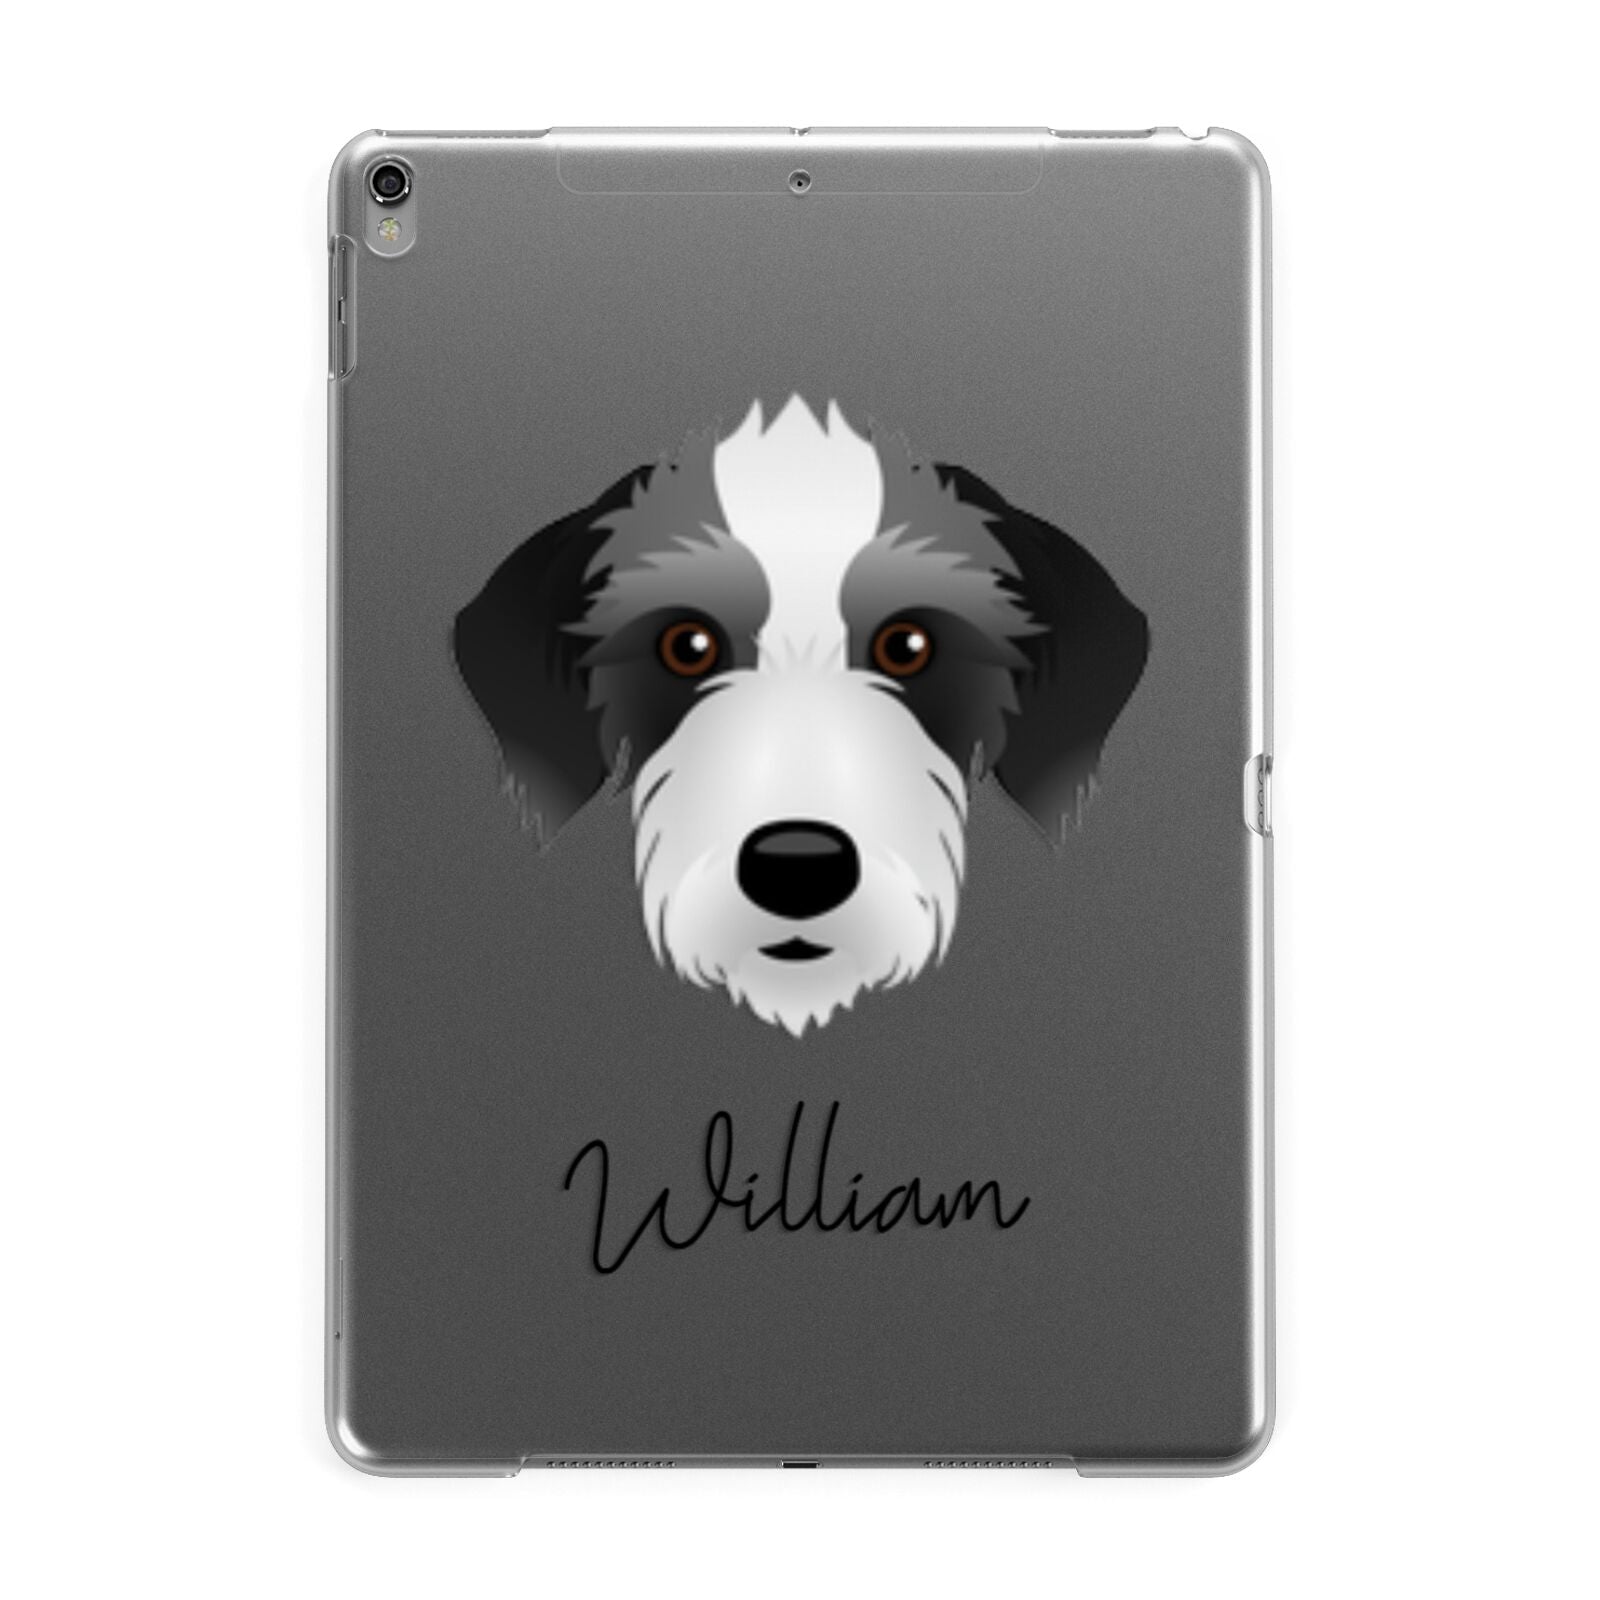 Bedlington Whippet Personalised Apple iPad Grey Case